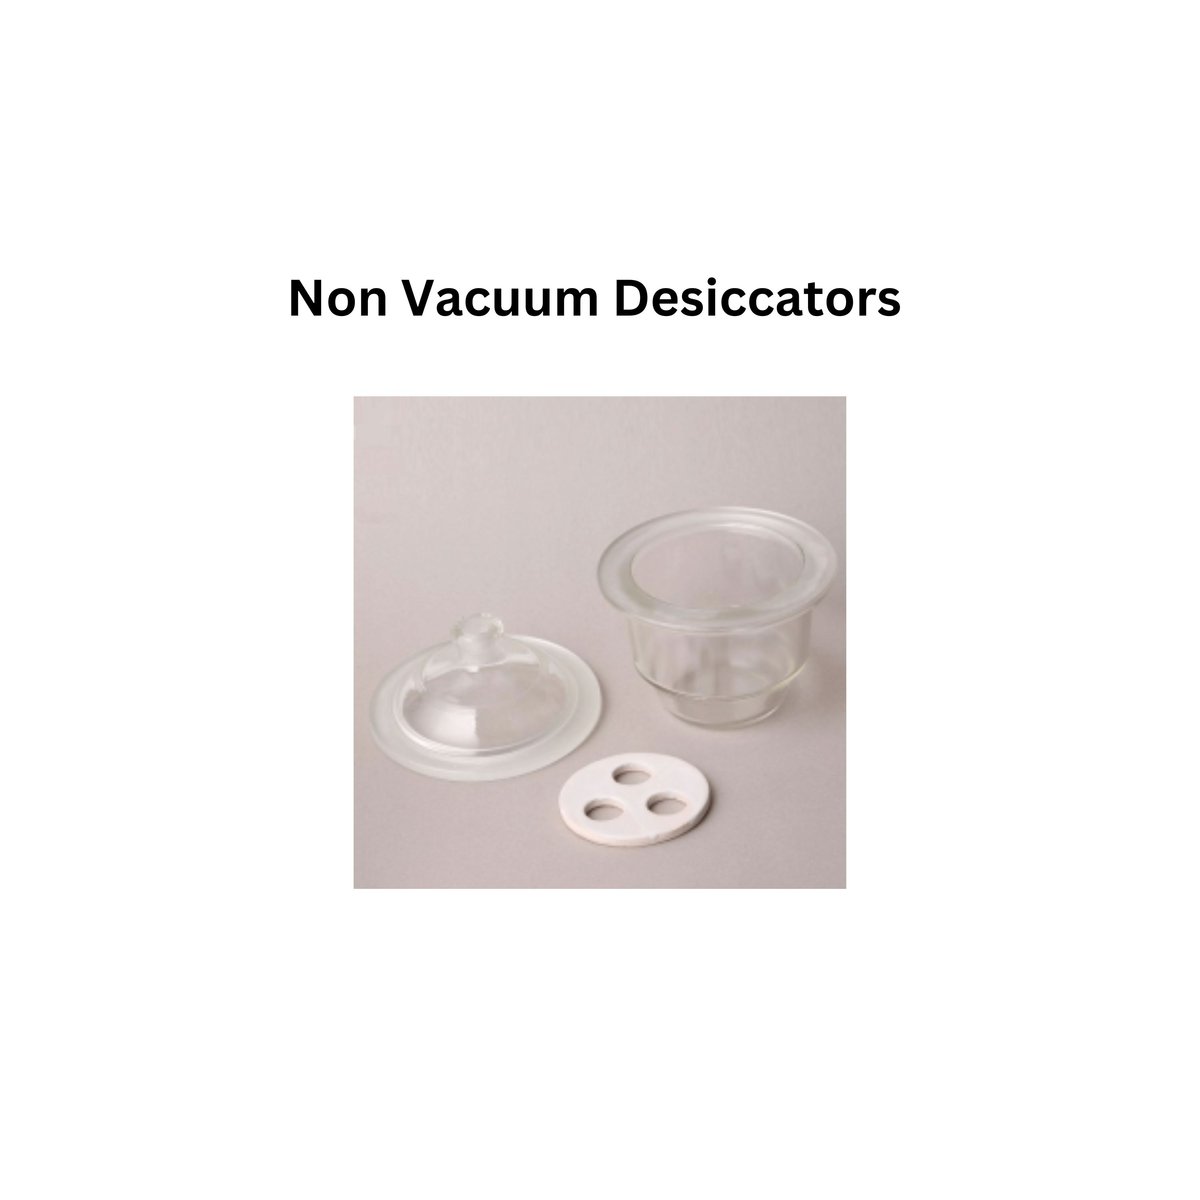 Non Vacuum Desiccators .jpg